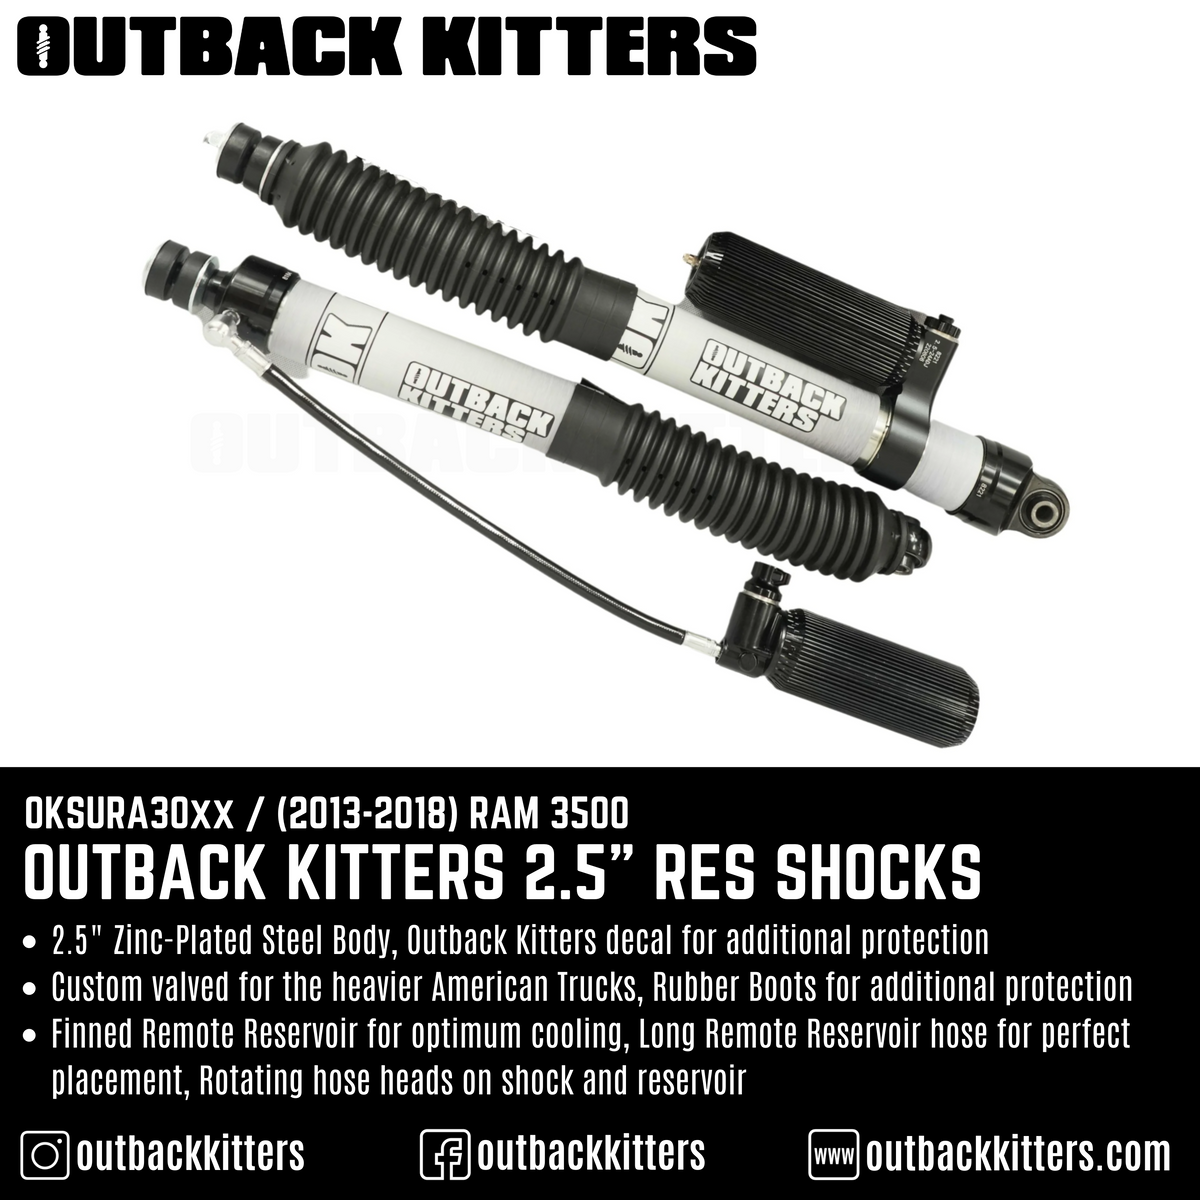 Outback Kitters 2.5" Reservoir Shocks for Ram 3500 (2013-2018) - Outback Kitters